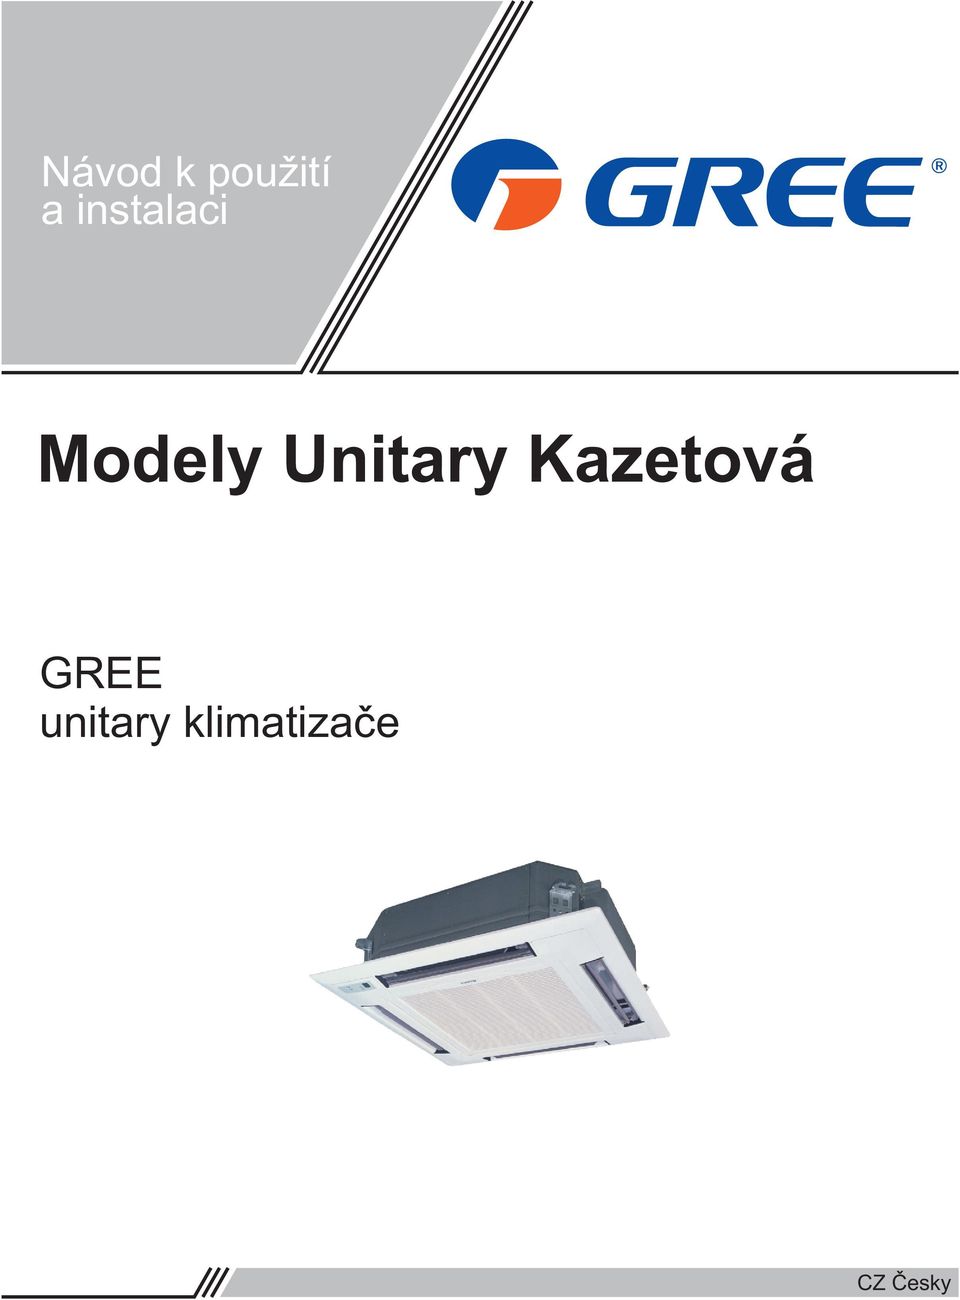 Modely Unitary Kazetová